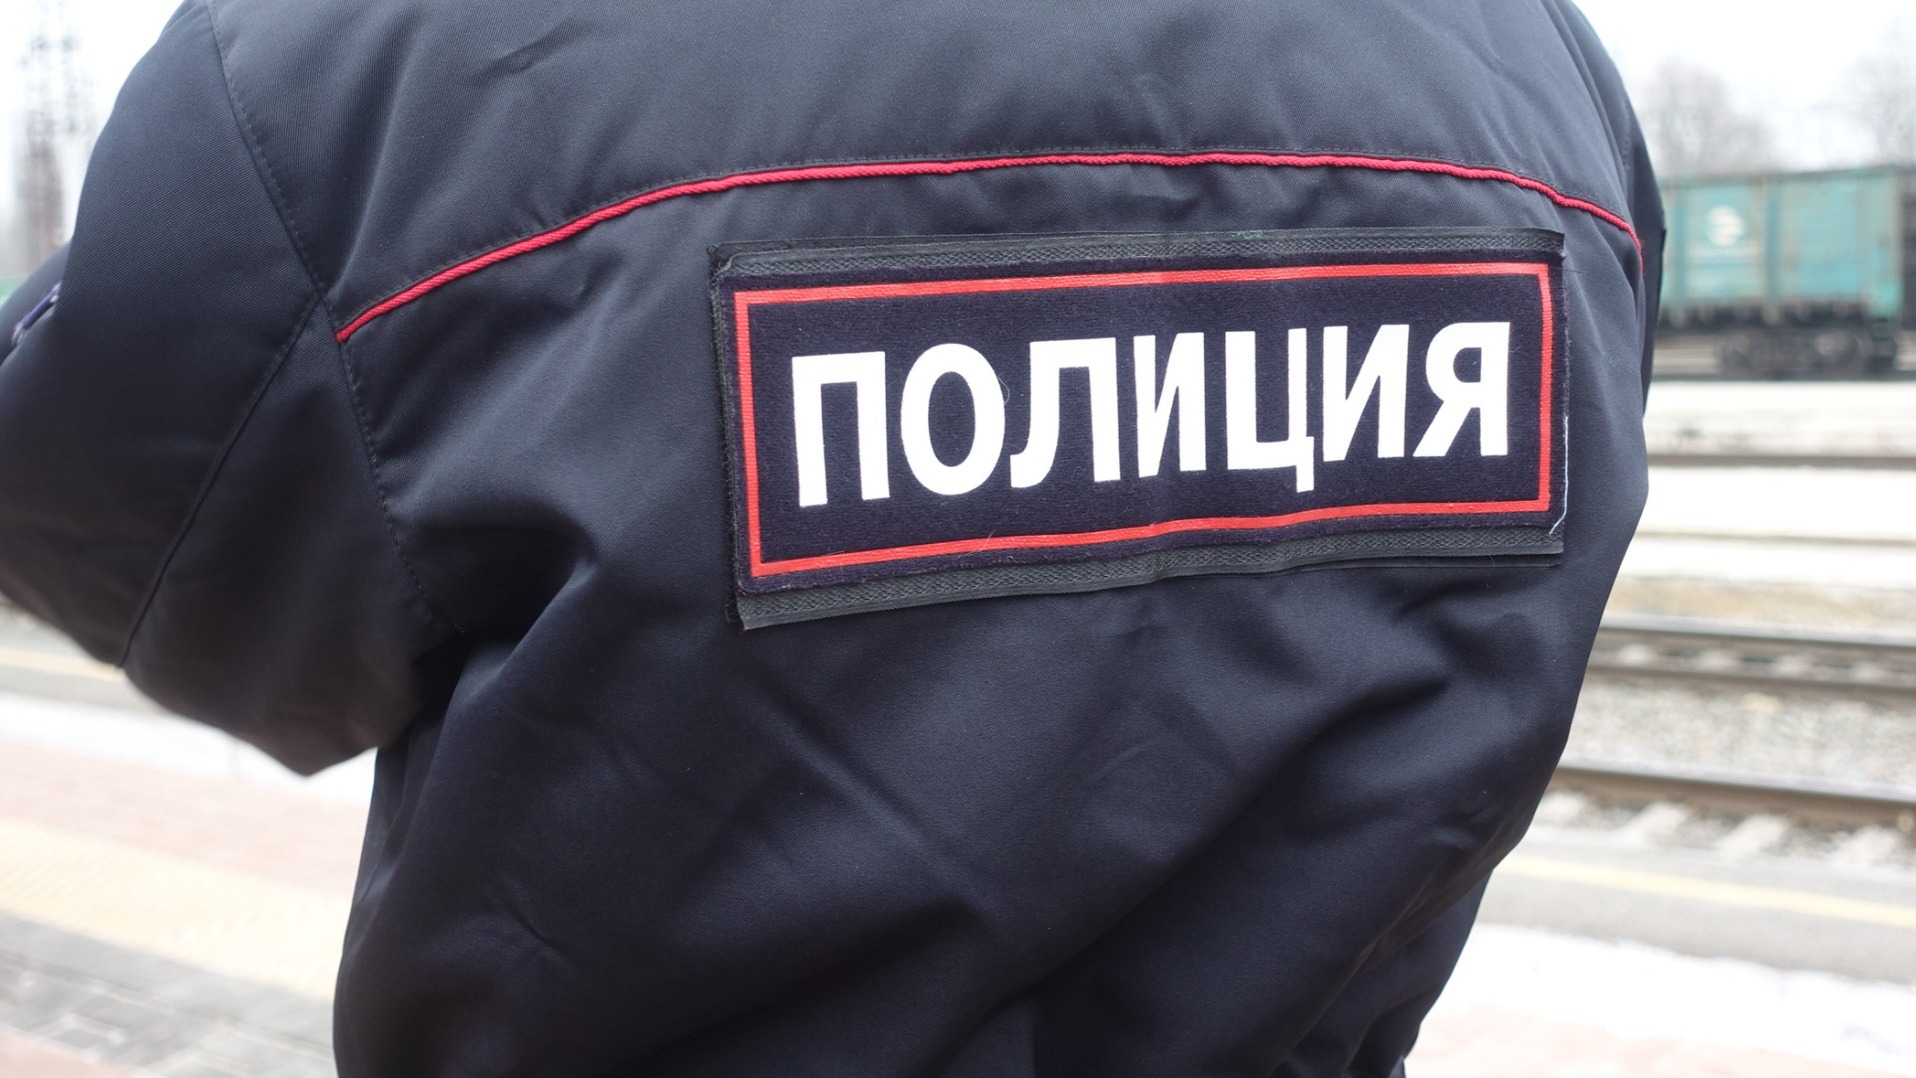 Жительница Екатеринбурга захватила такси и отказывалась выходить без полиции